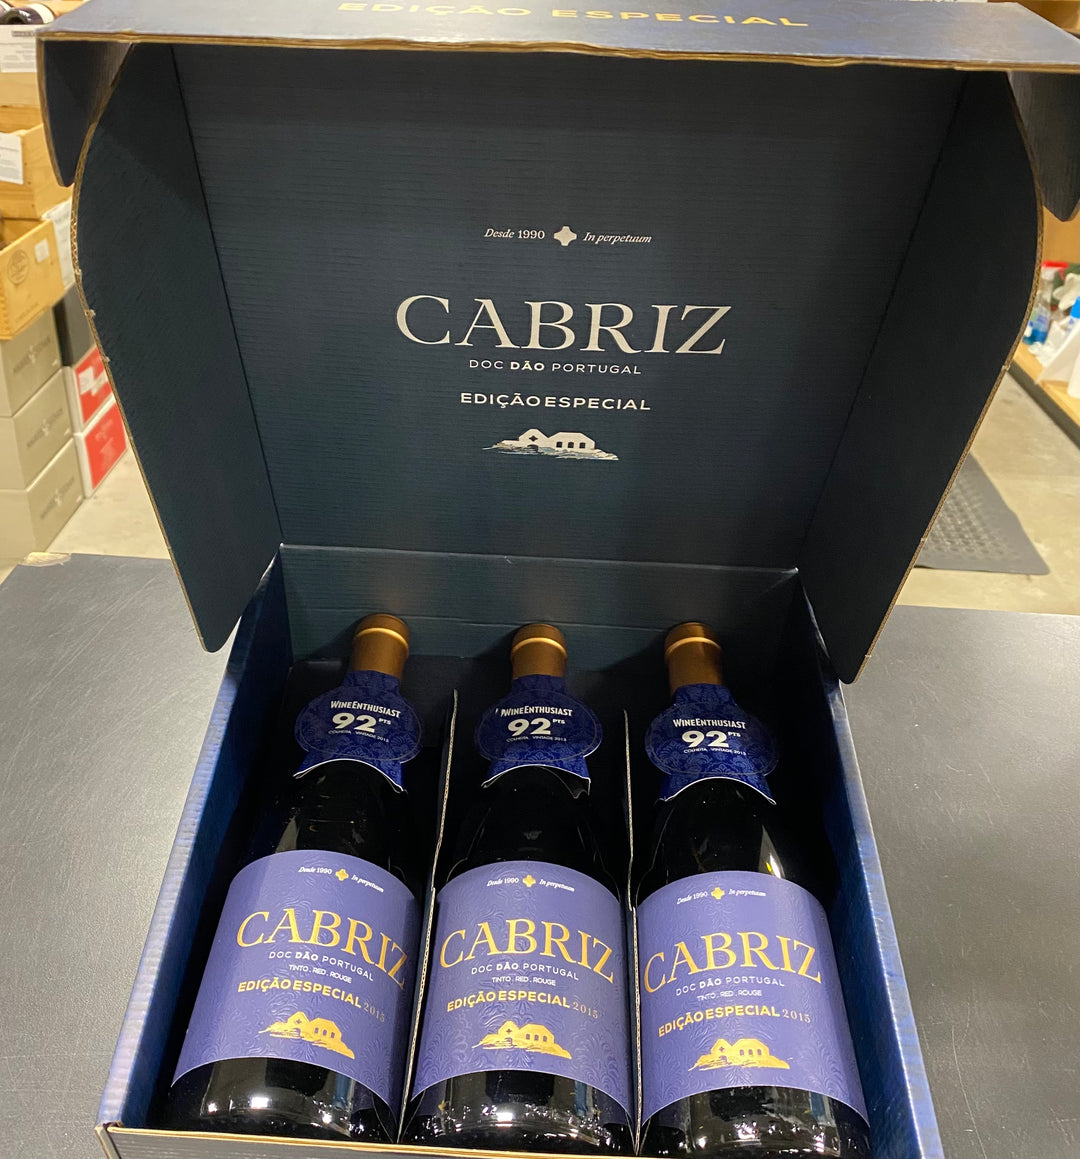 Ends... Tinto Wine~Serious Cabriz – Edition Dao Quinta Bin Special Savings Portugal de Great